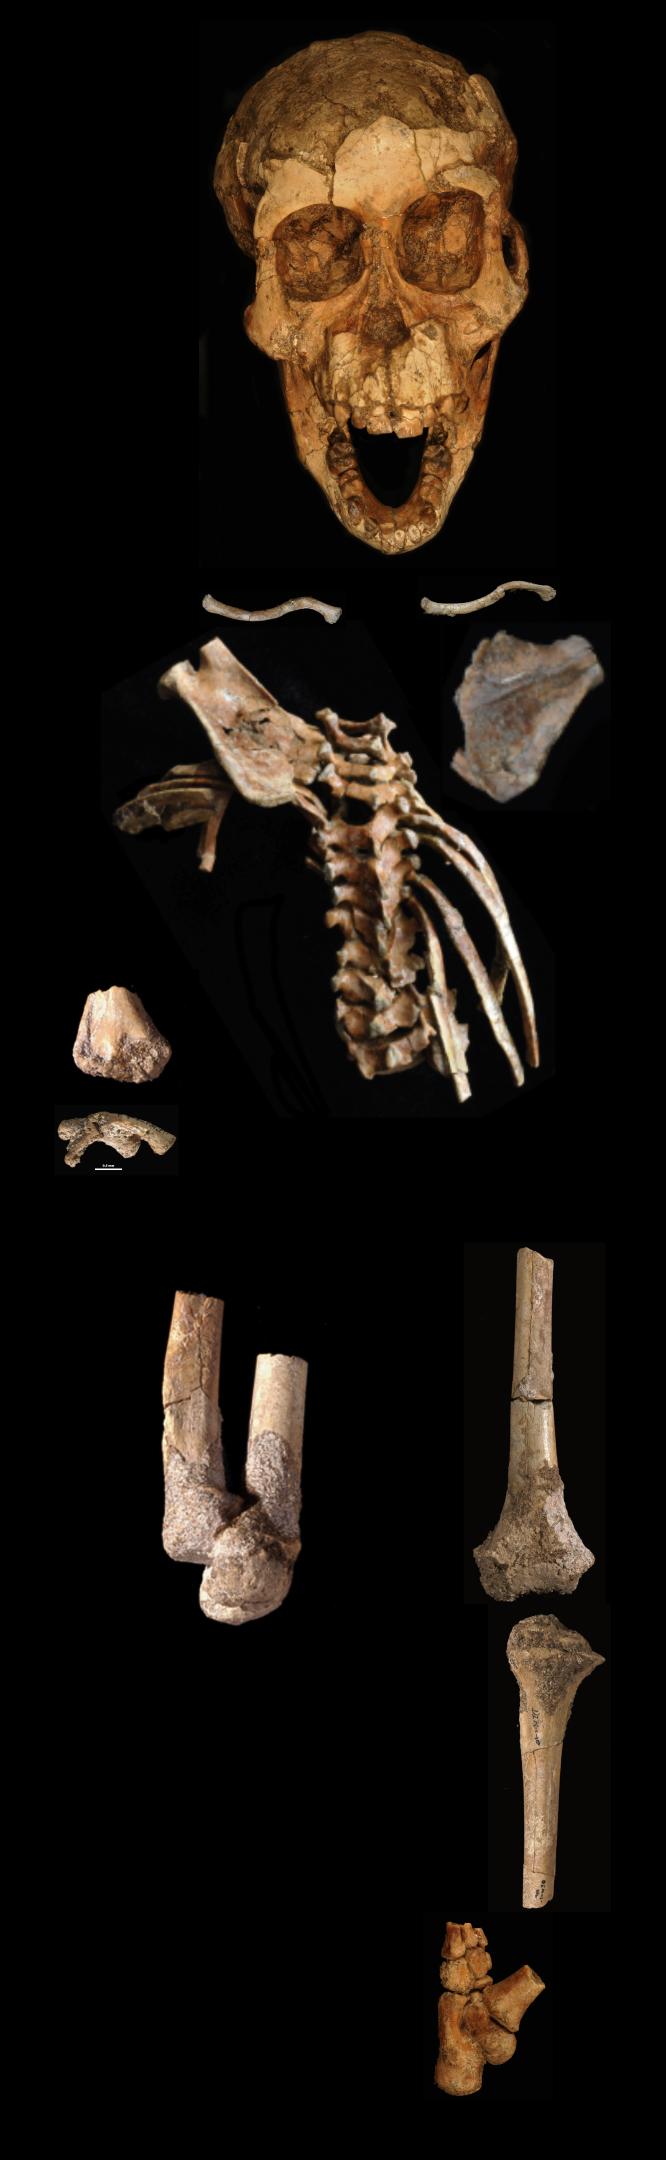 一类人猿少年的足部化石展现了猿样特征——提示还在攀援树木